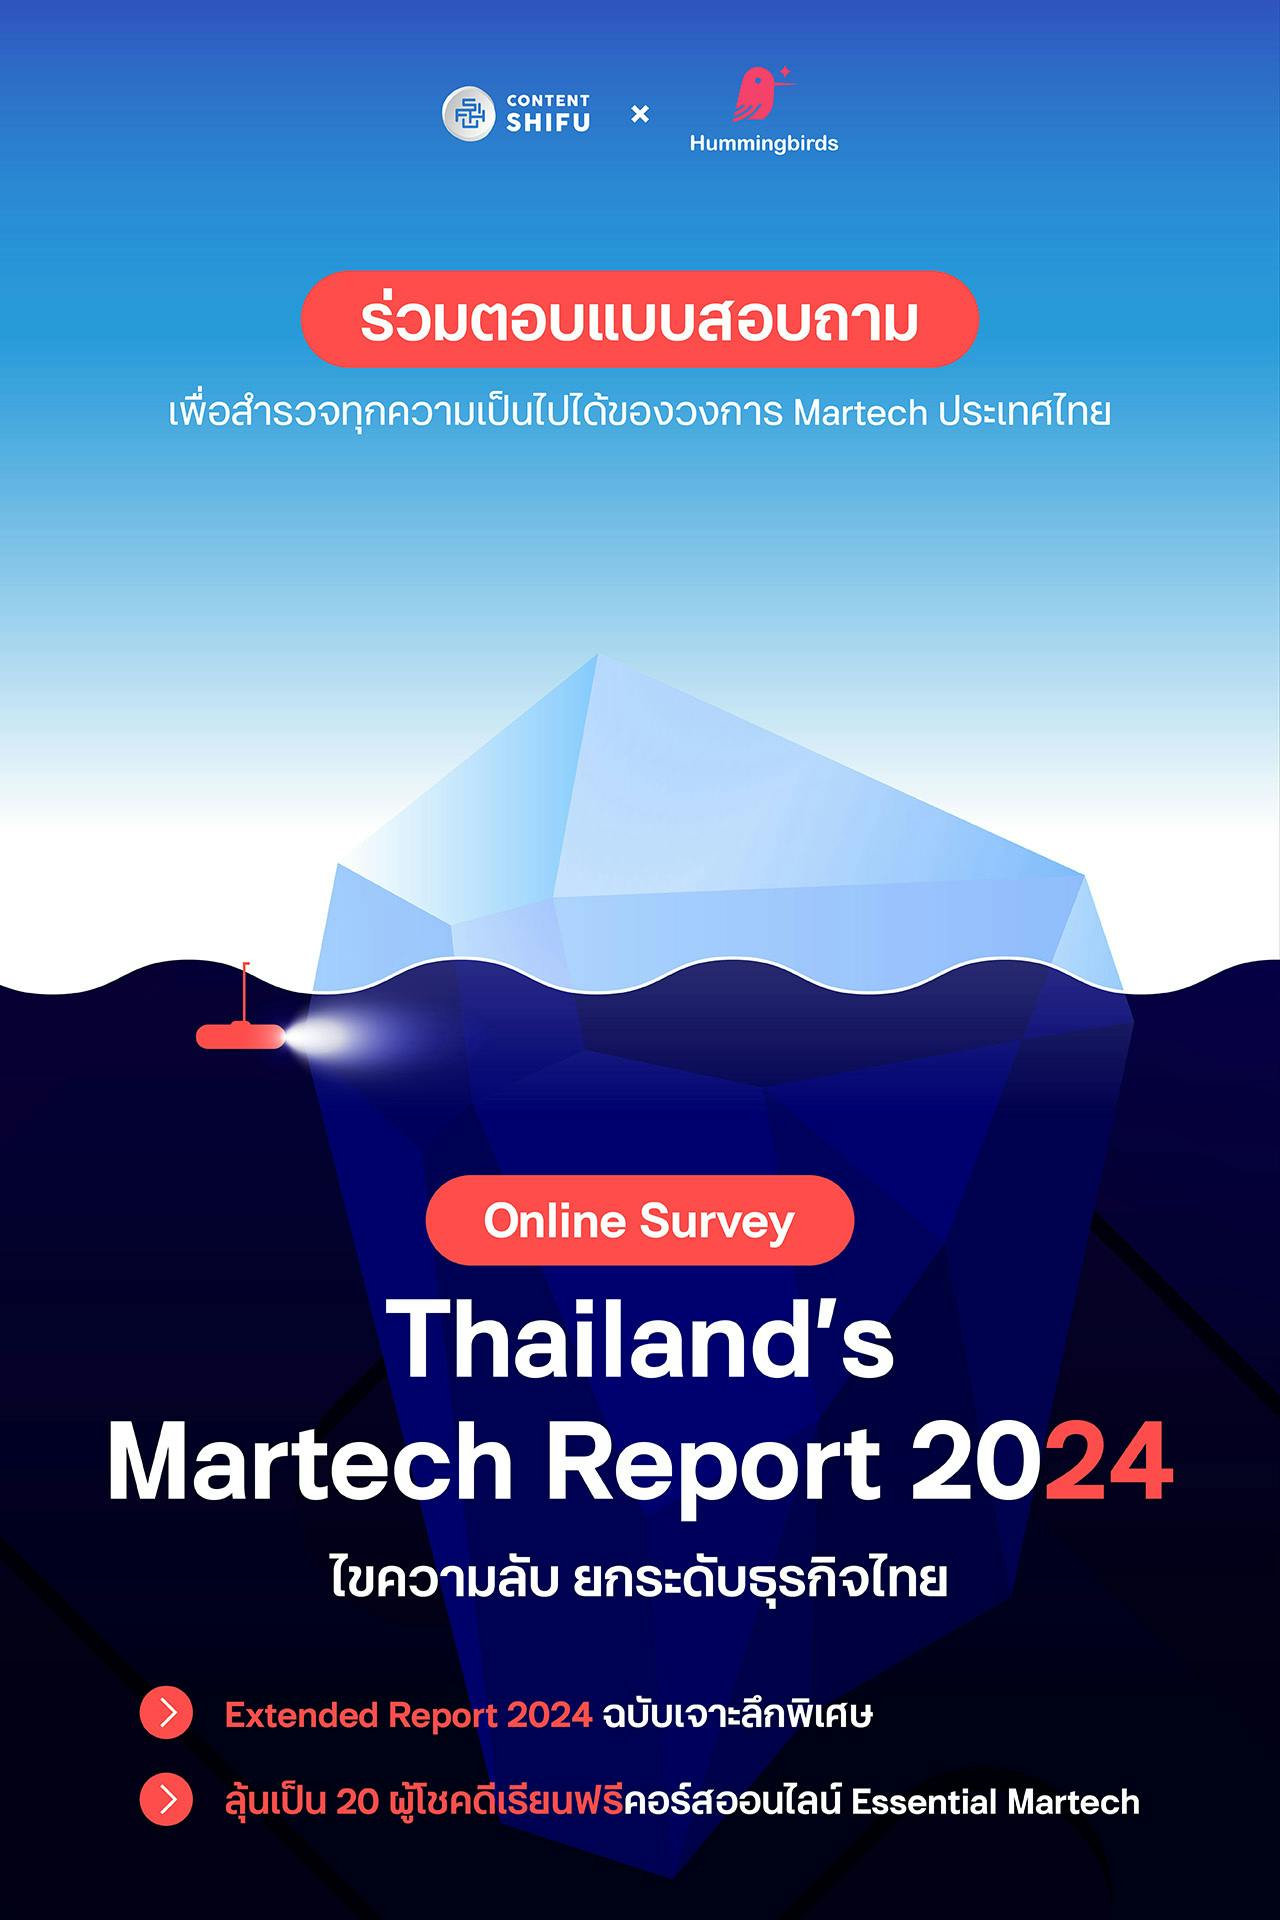 Cover Image for ร่วมสร้าง Thailand’s Martech Report 2024 ต่อยอดความสำเร็จ พัฒนาวงการดิจิทัลสู่อนาคต พร้อมรับสิทธิพิเศษมากมาย